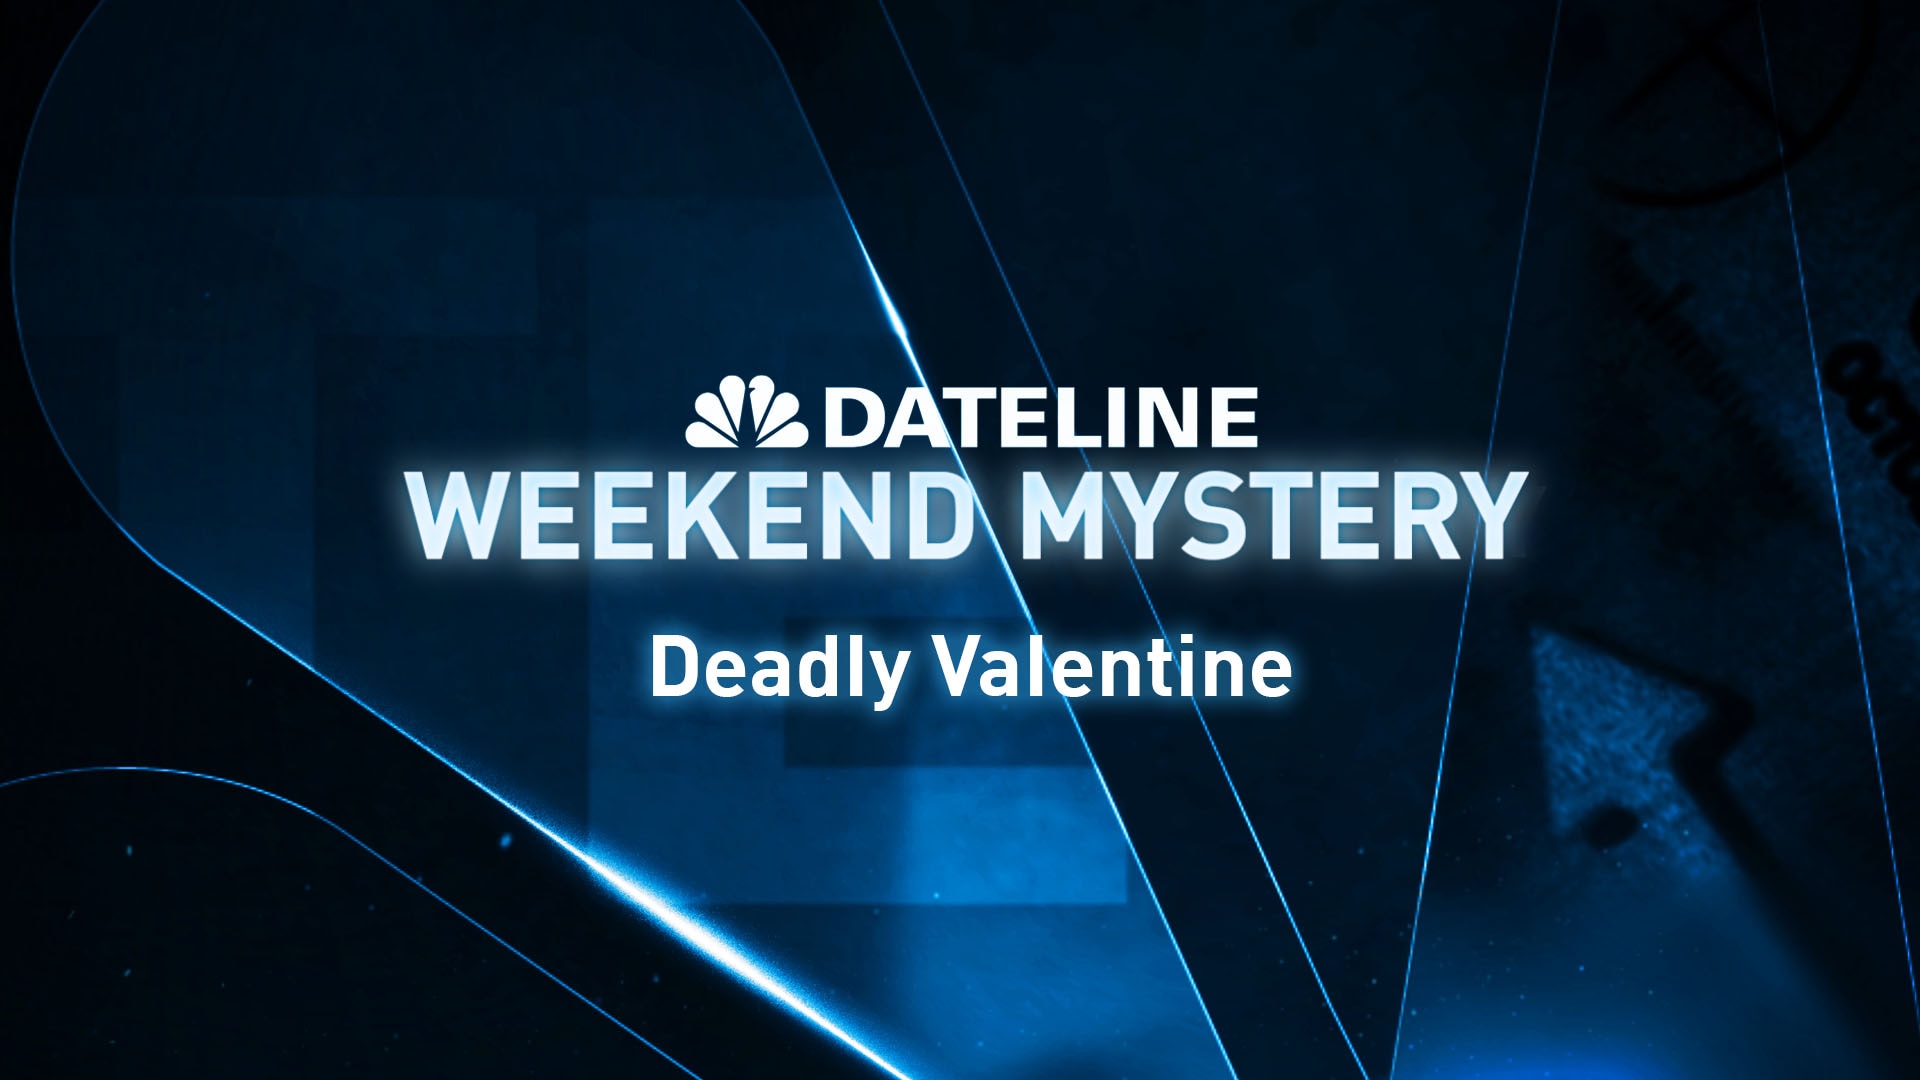 Watch Dateline Episode: Deadly Valentine - NBC.com